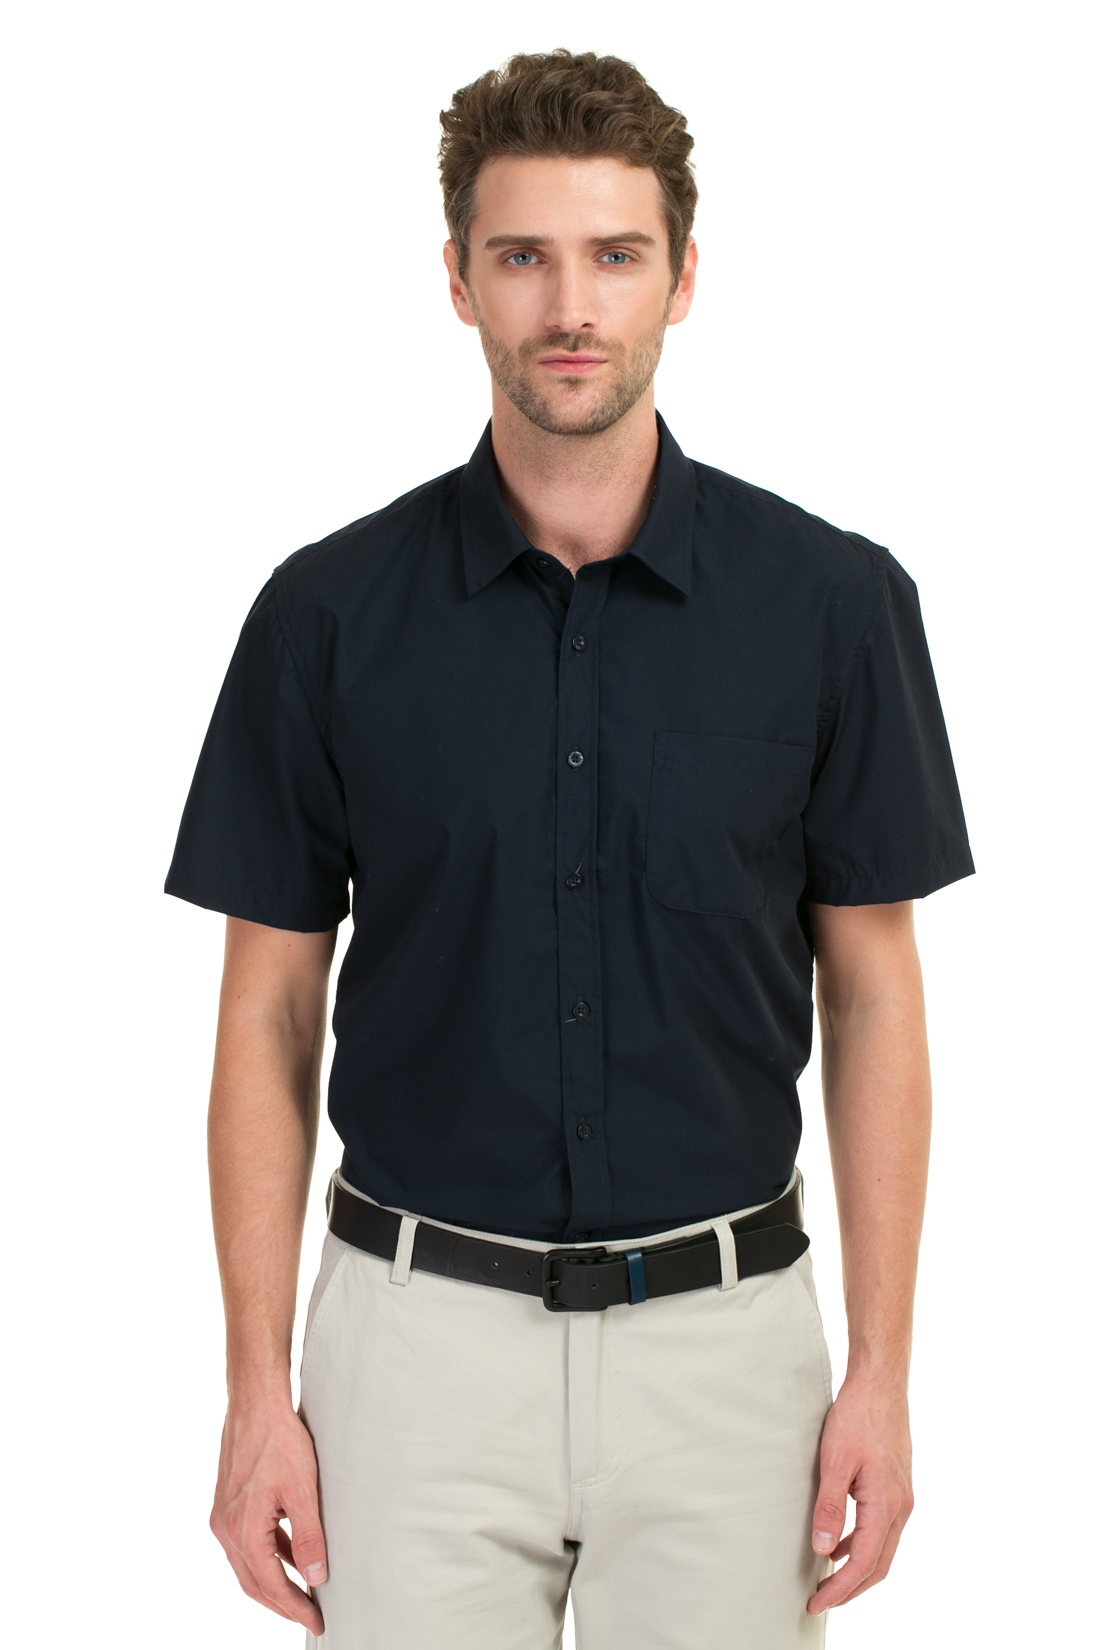 Базовая рубашка с коротким рукавом (арт. baon B687027), размер M, цвет синий